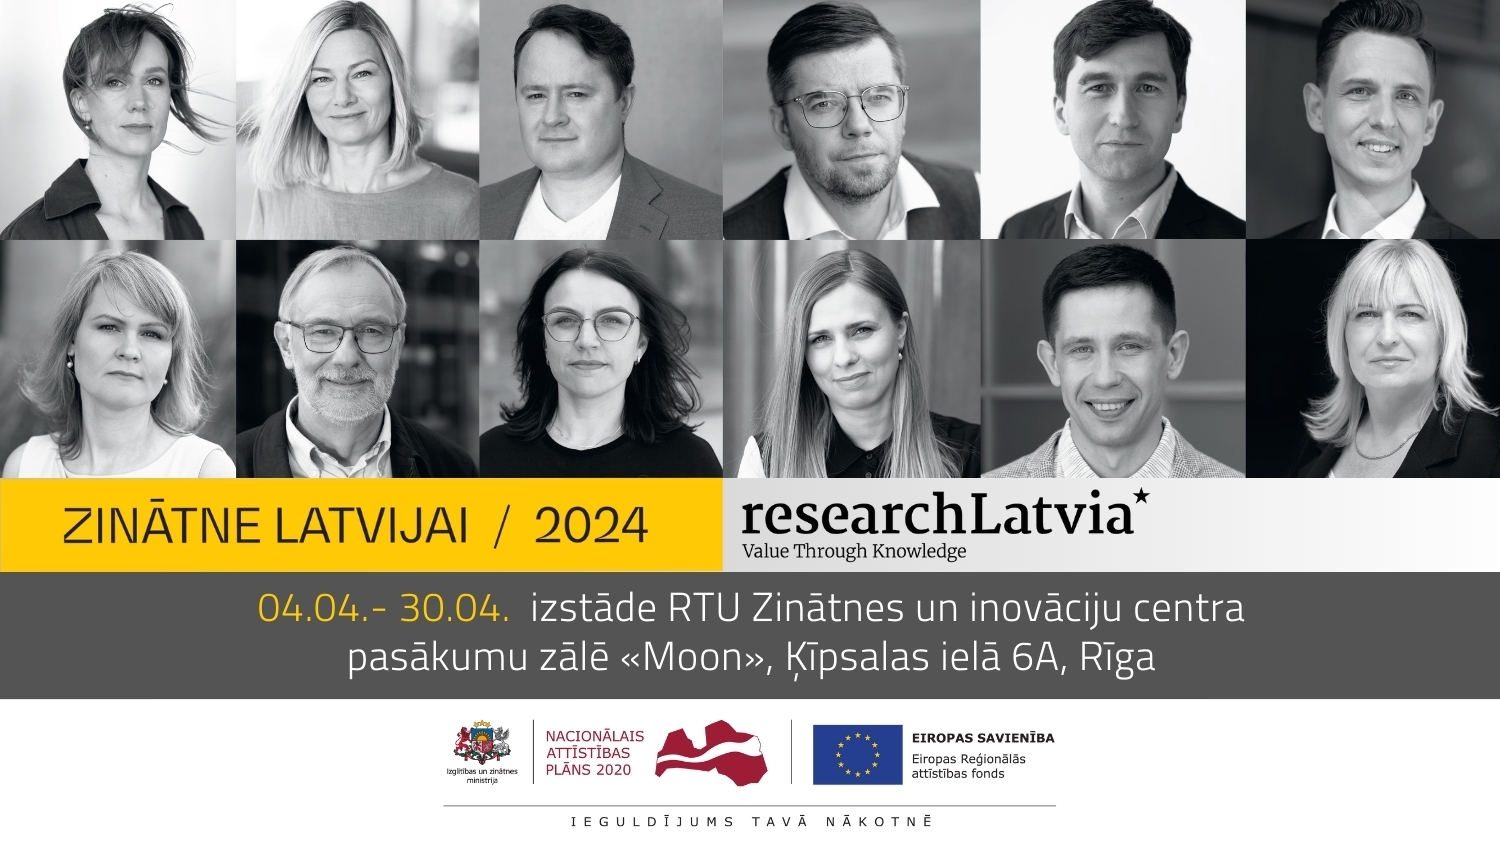 Zinātne Latvijai izstādes plakāts ar 12 pētnieku fotogrāfijām